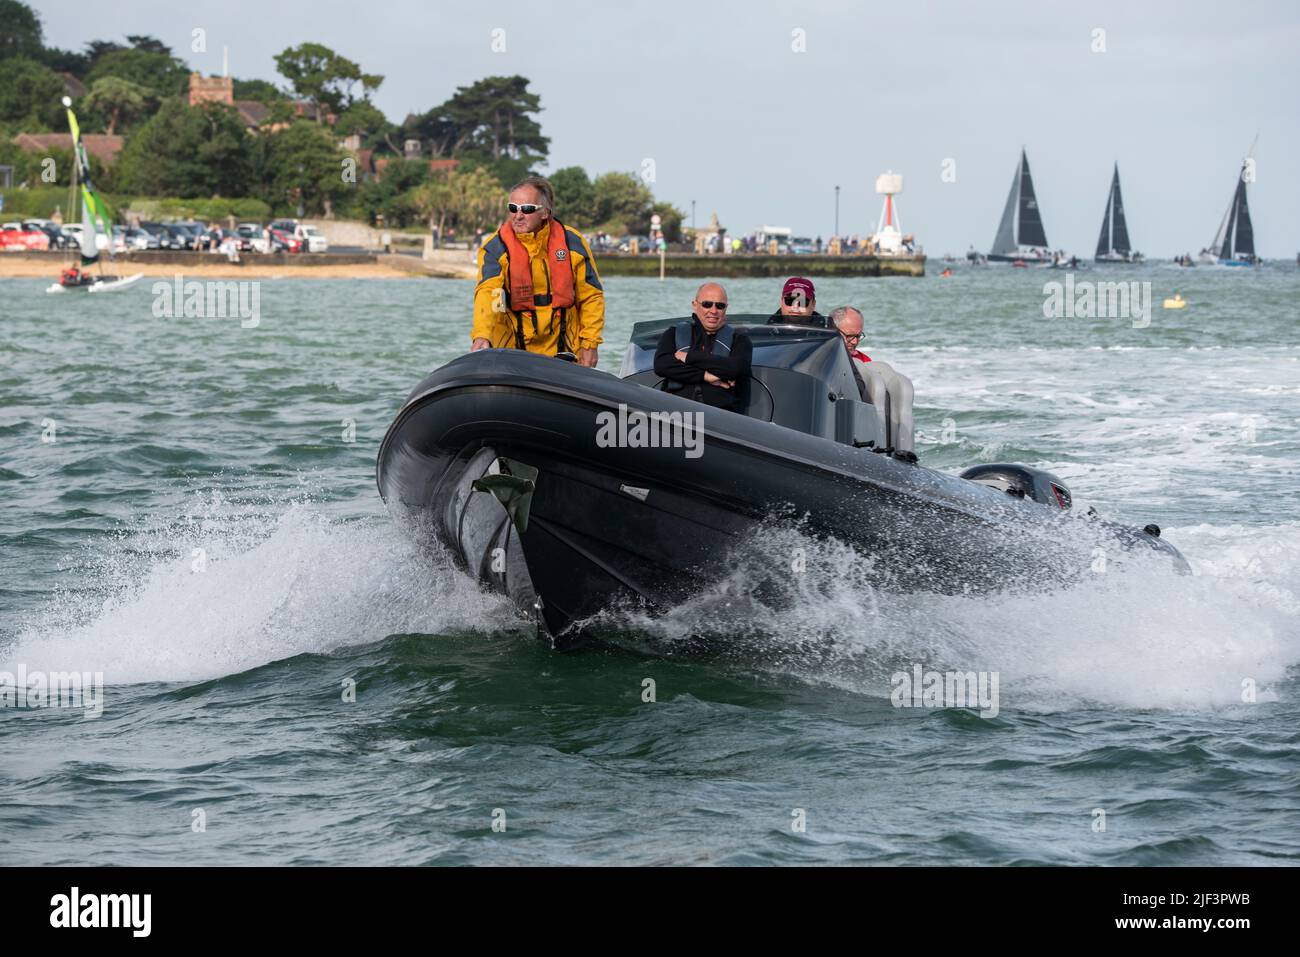 Ein schwarzes RIB oder starres Aufblasbares Boot eines von vielen zusätzlichen Wasserfahrzeugen, das das jährliche Round the Island Race des Isle of Wight Sailing Club in Sou unterstützt Stockfoto